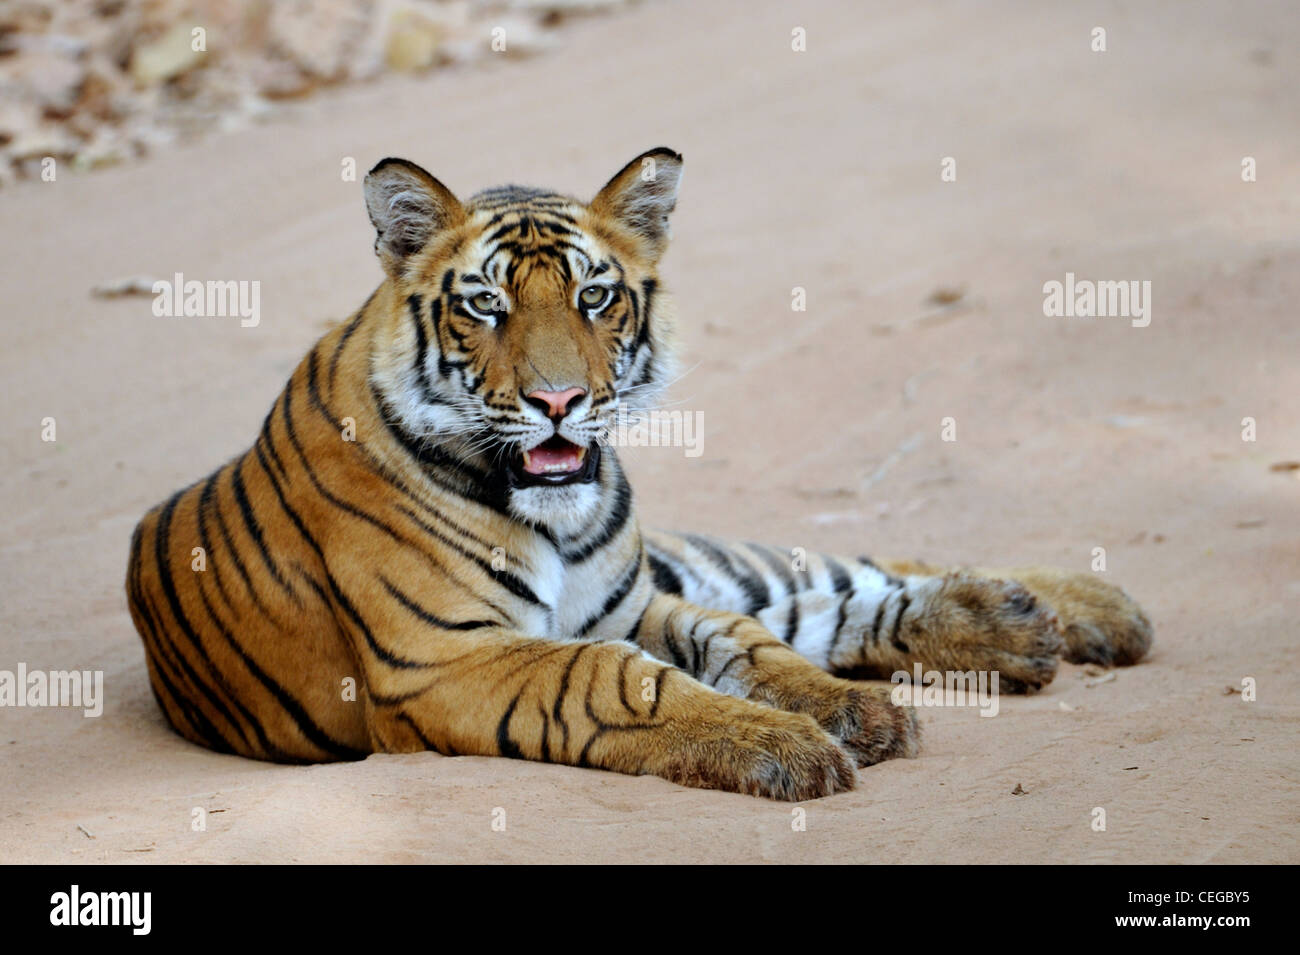 Bengal tiger cub (Panthera tigris) in Bandhavgarh National Park, Madhya Pradesh, India Stock Photo